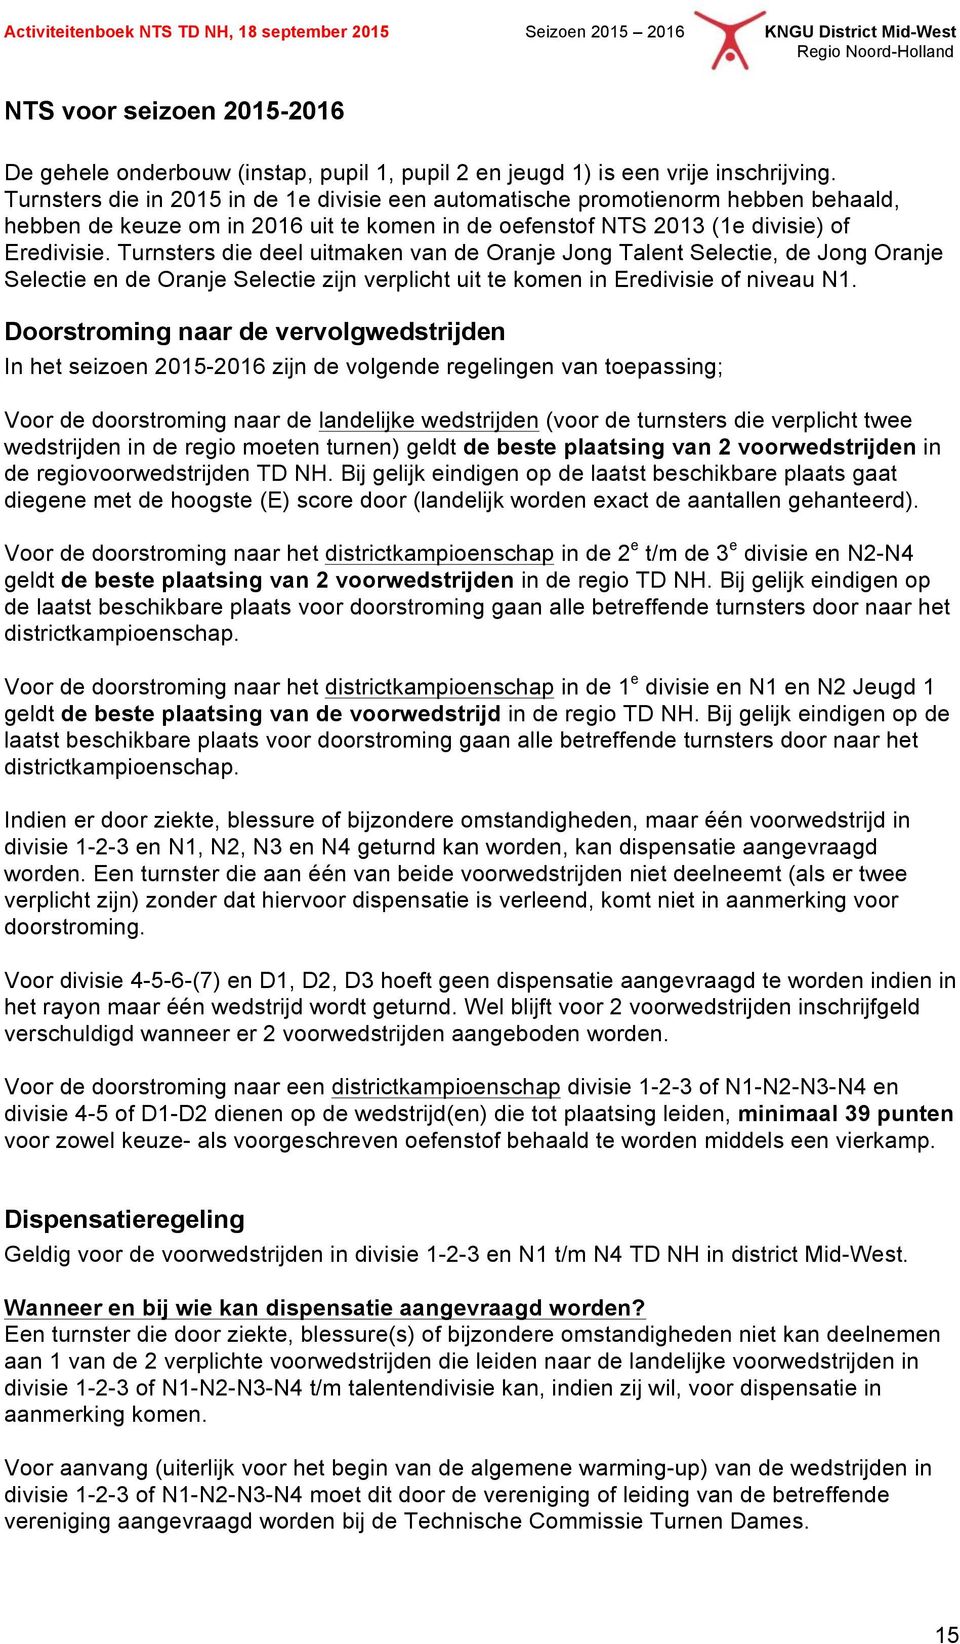 Turnsters die deel uitmaken van de Oranje Jong Talent Selectie, de Jong Oranje Selectie en de Oranje Selectie zijn verplicht uit te komen in Eredivisie of niveau N1.